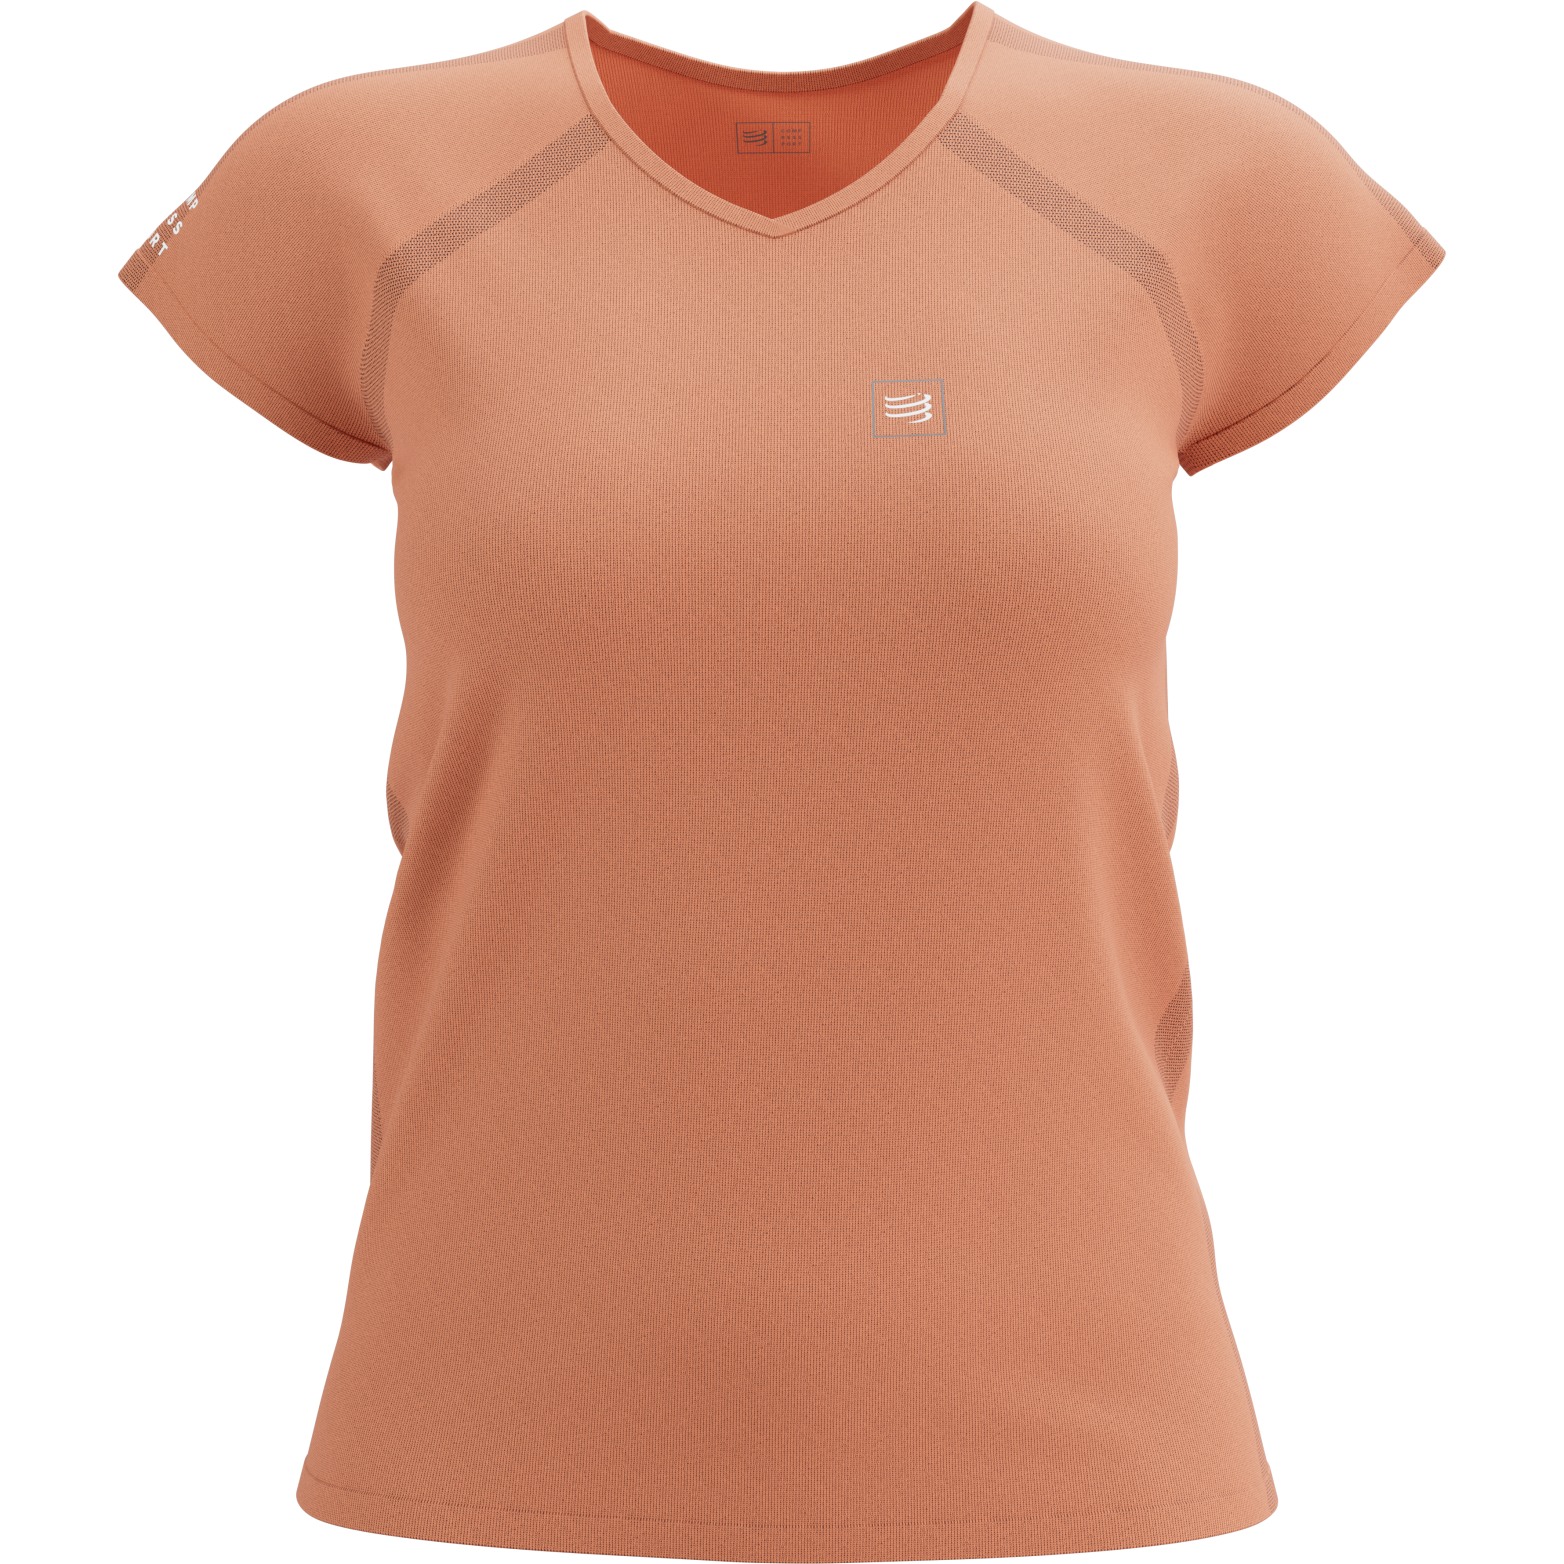 Produktbild von Compressport Training T-Shirt Damen - papaya punch